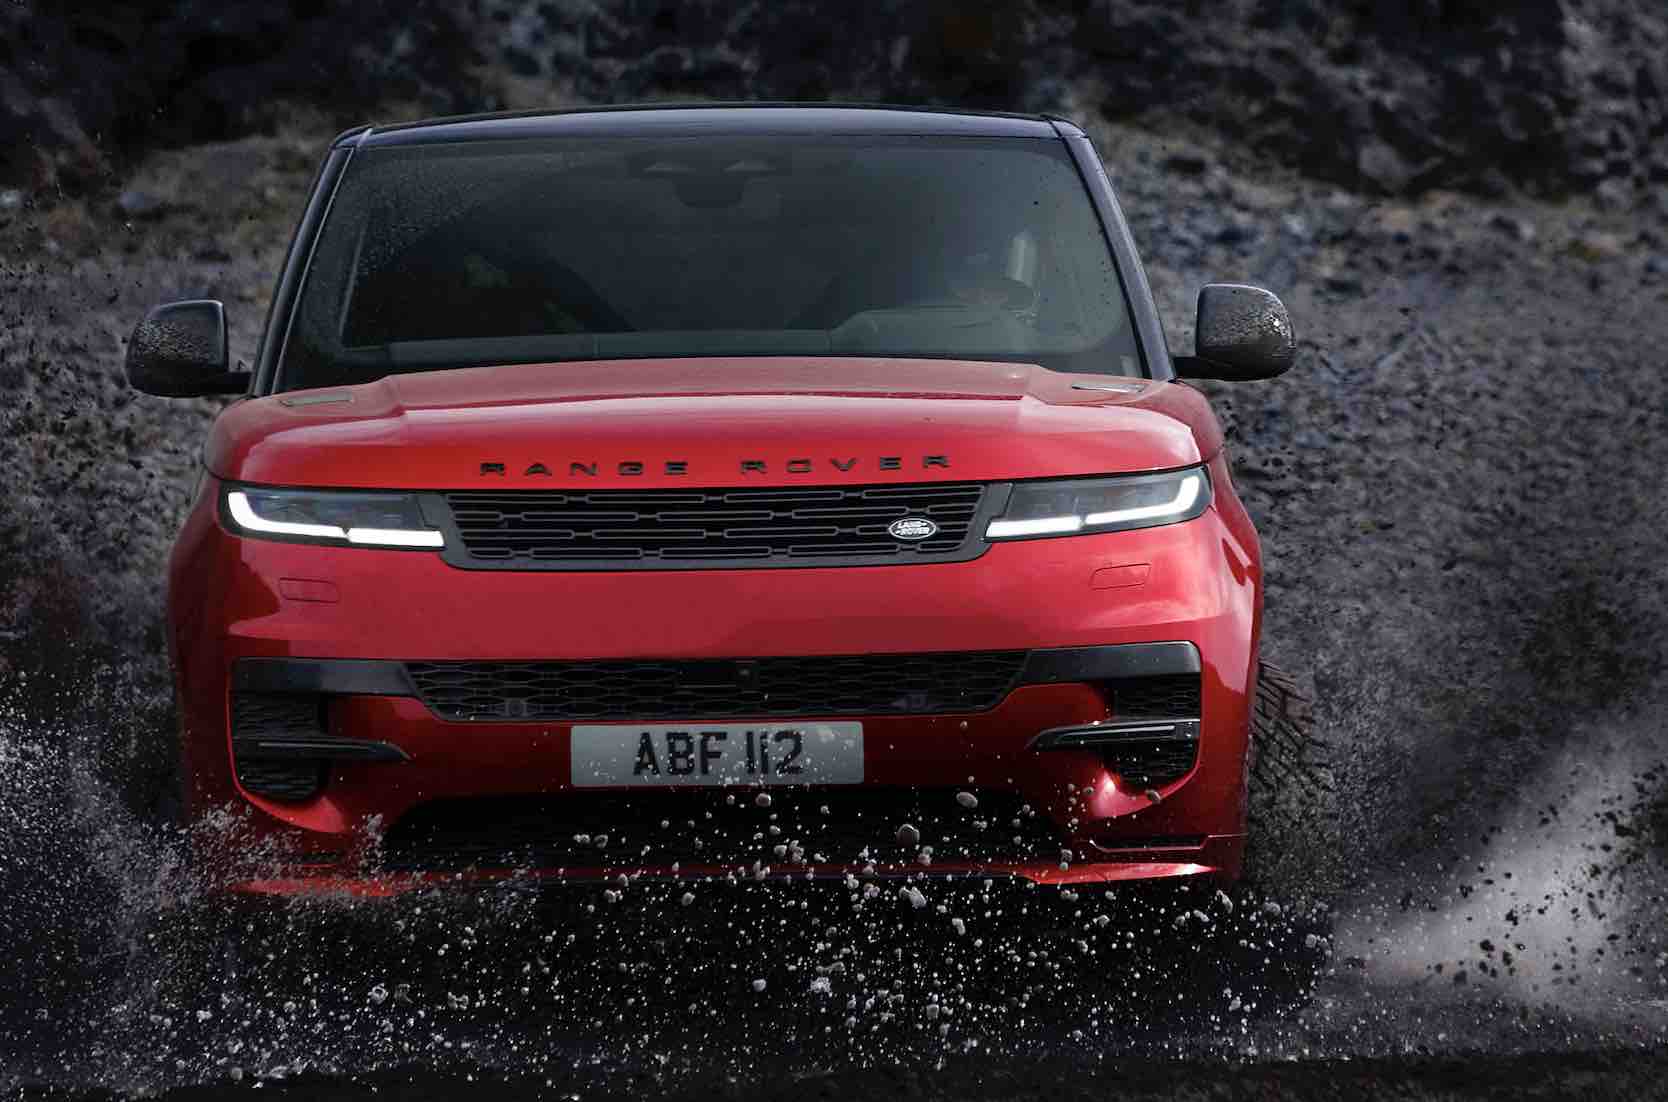 Largo allo Sporting Luxury  con la Nuova Range Rover Sport